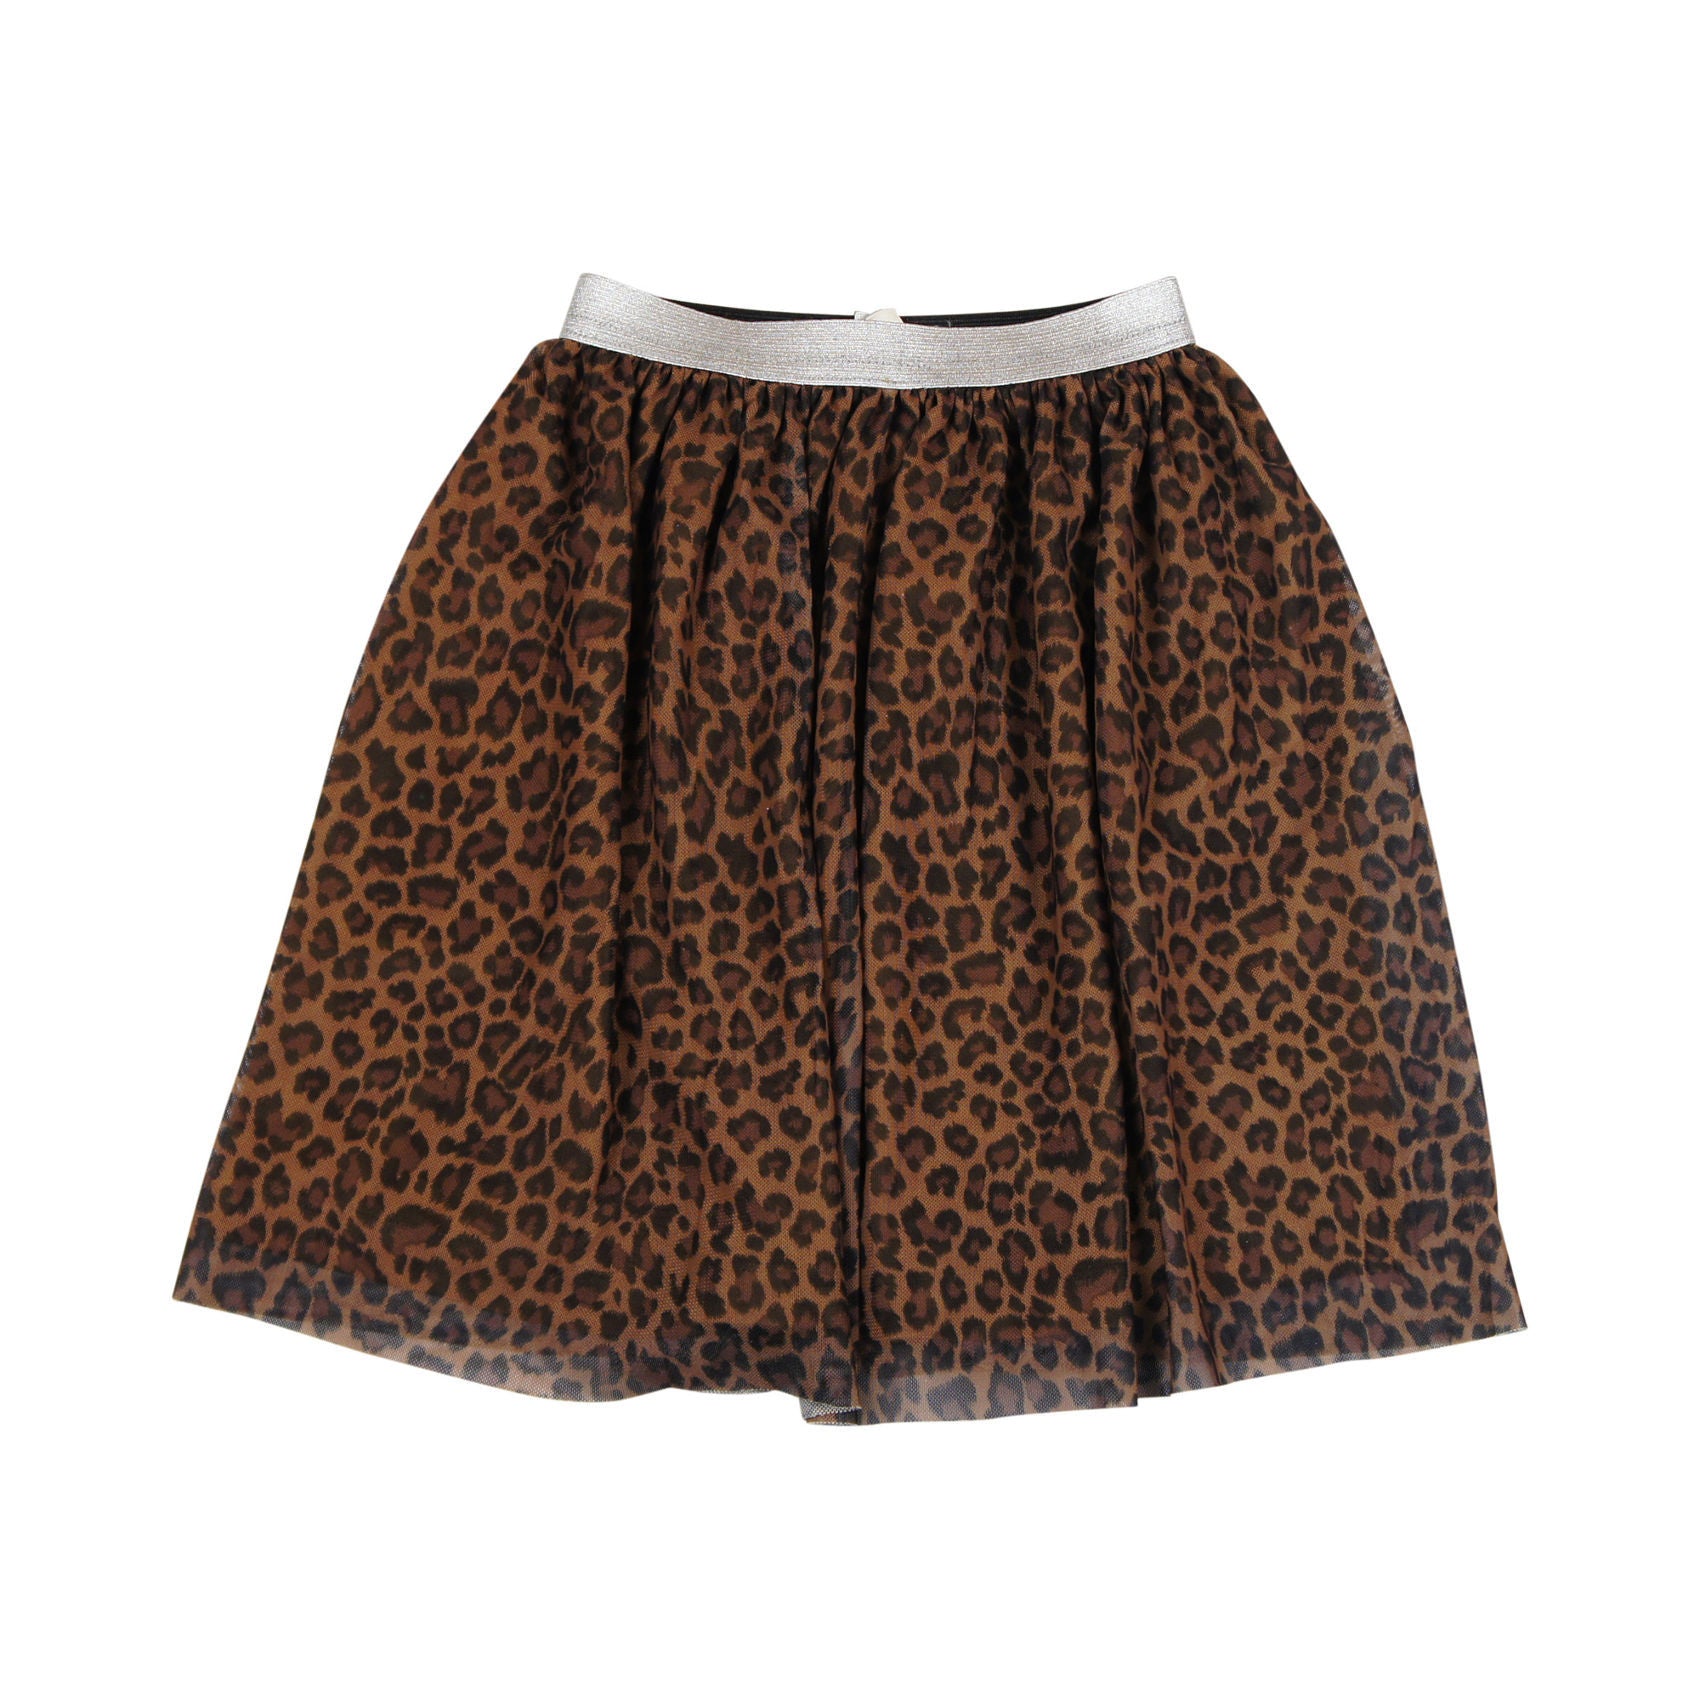 Leopard Print Tulle Skirt - TeelaNYC